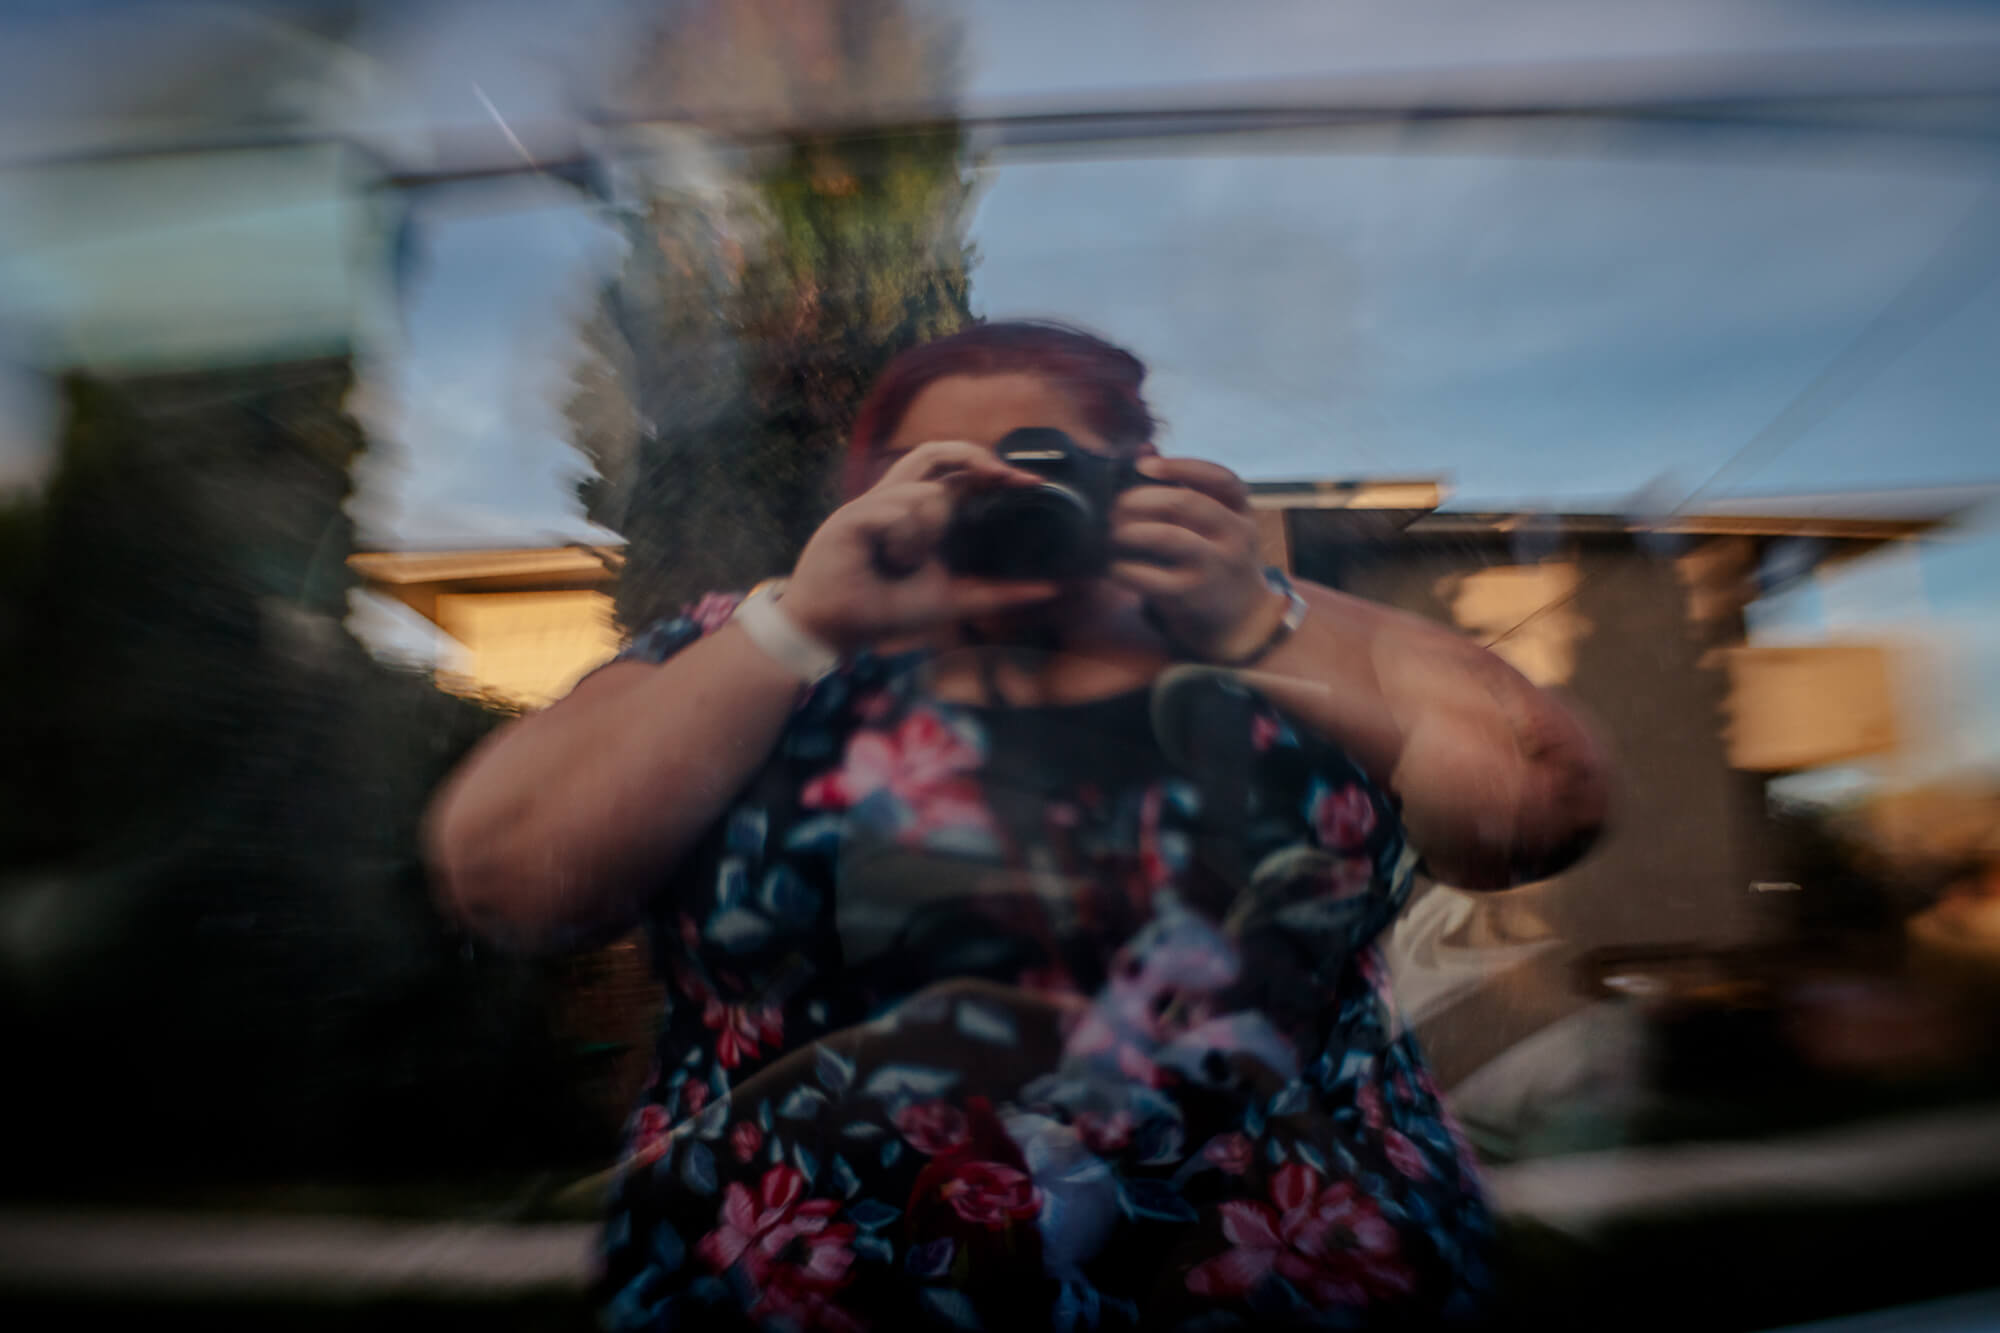 self portrait of woman in flower dress reflected in glass